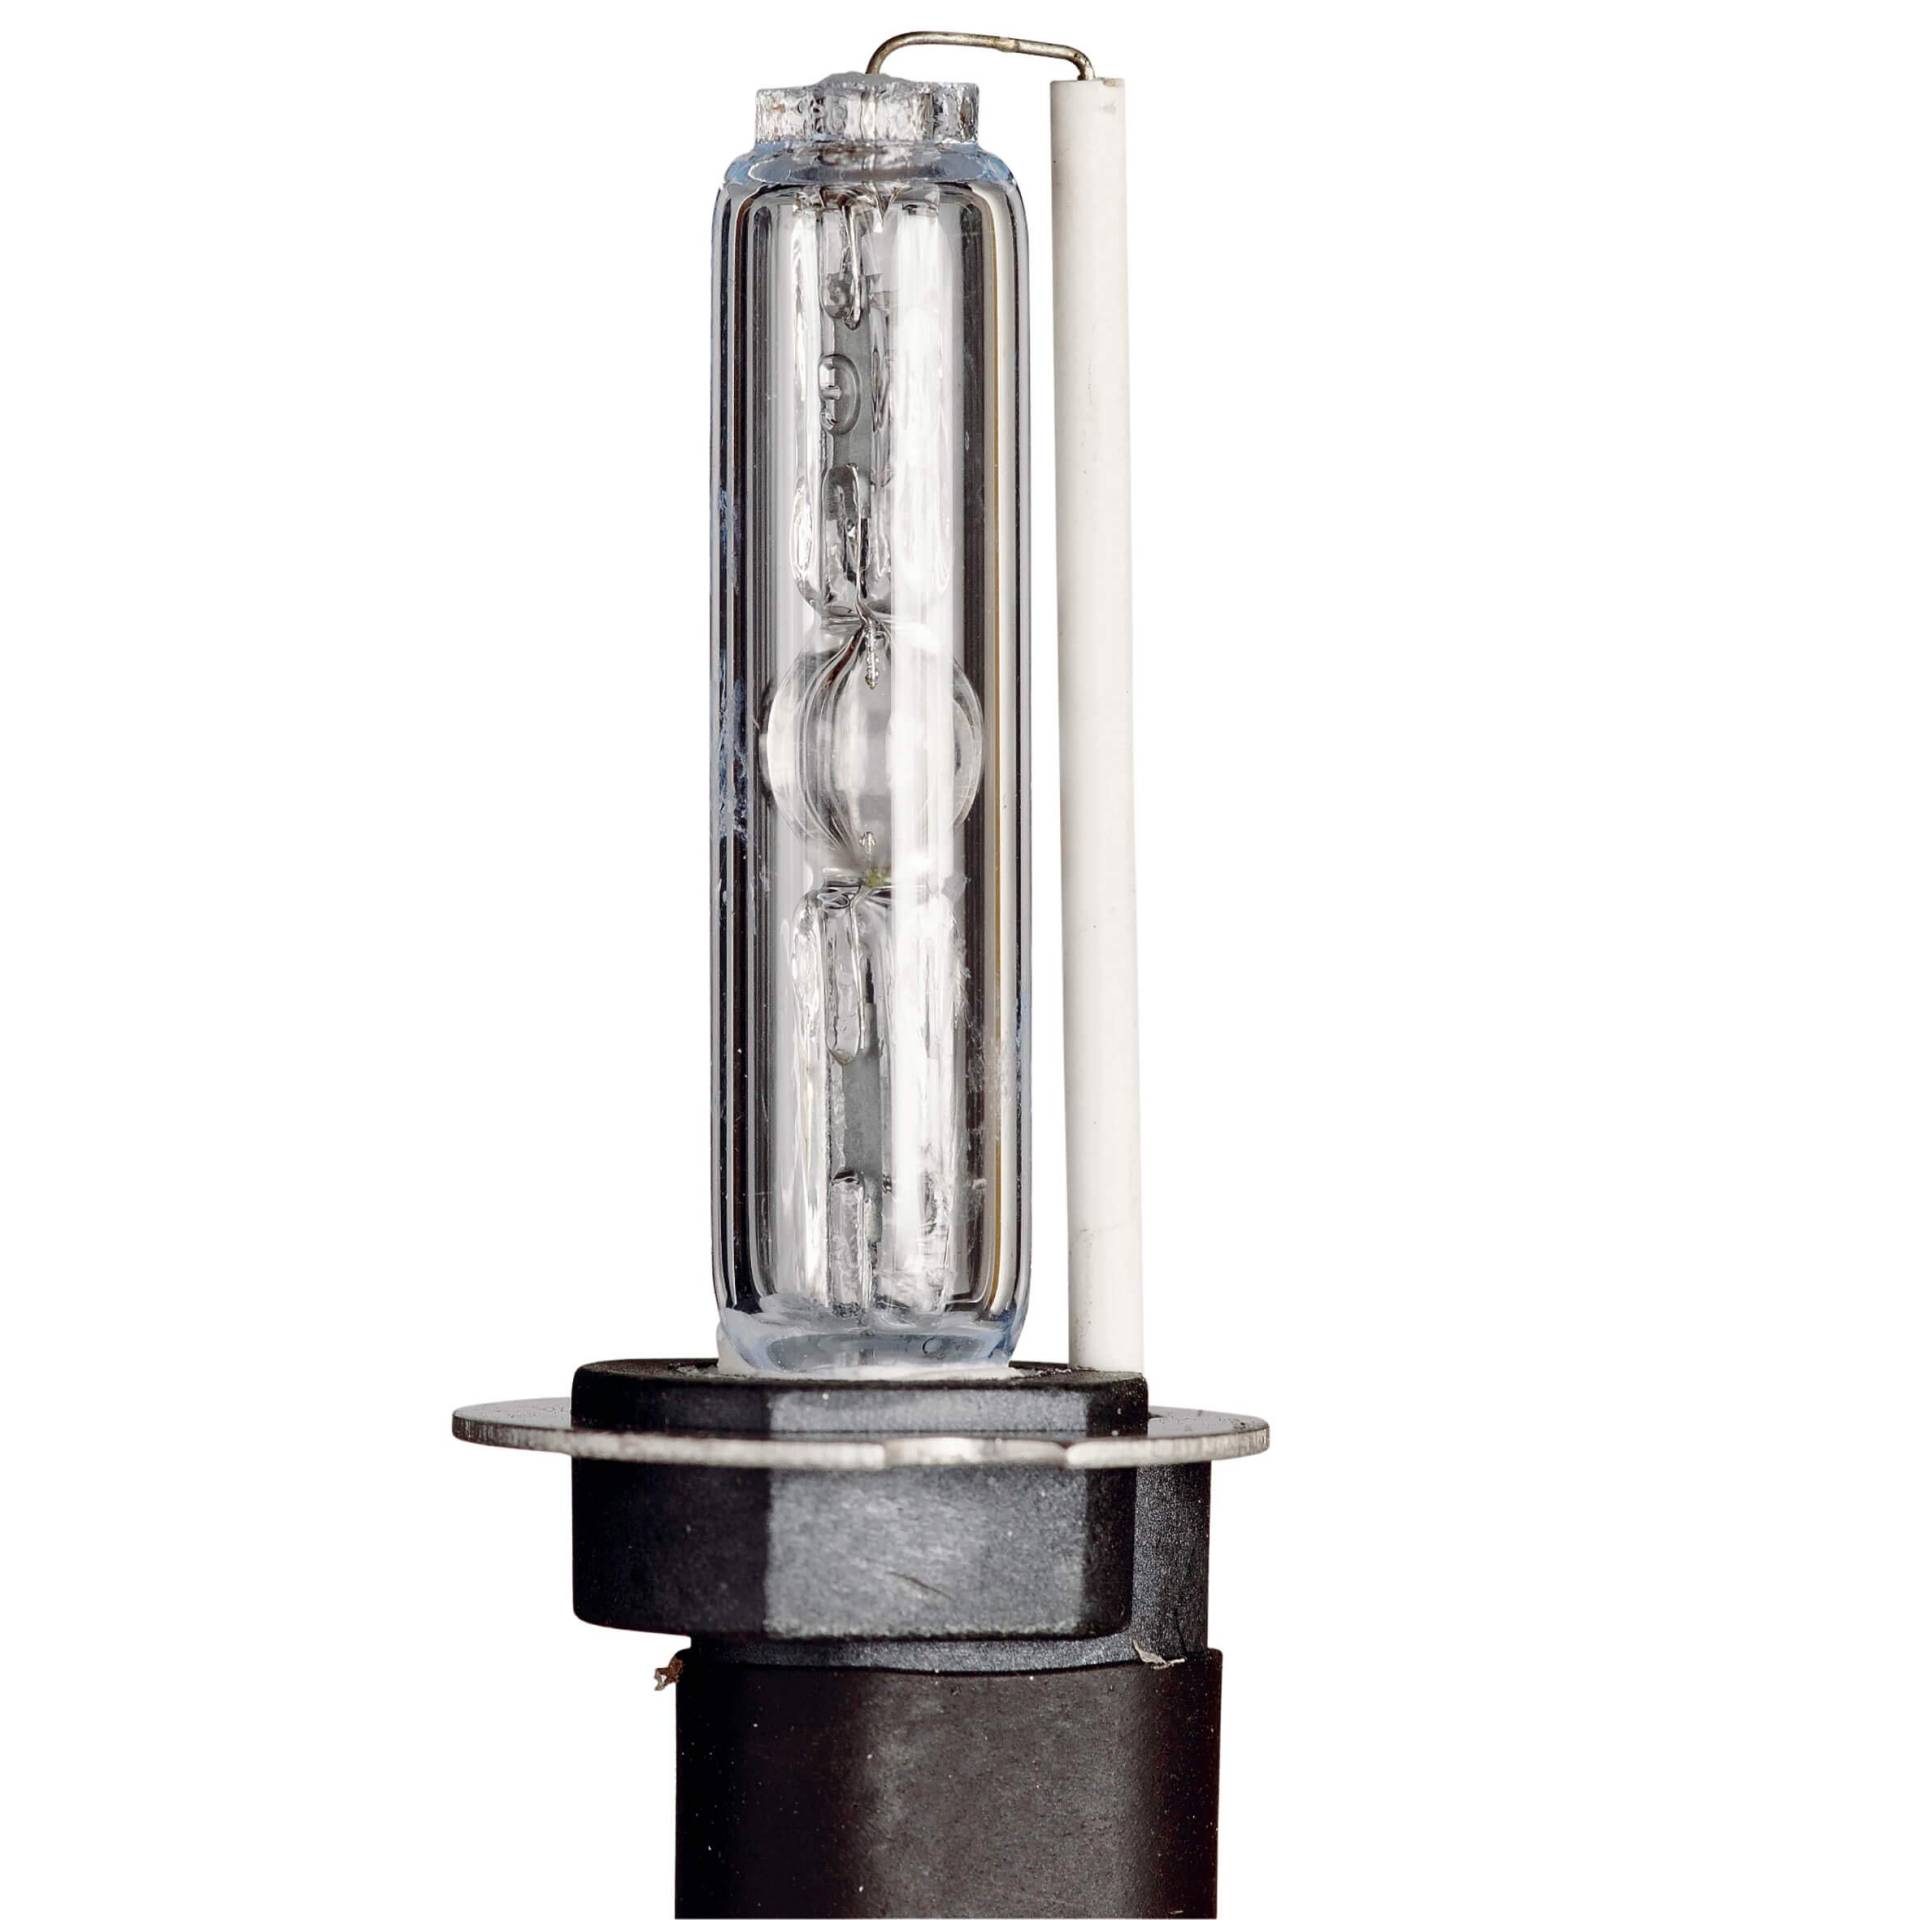 Sumex HDCBSH7 HID Slim Ballast Canbus Lichter H7, 6500 K, 12 V, 35 W von Sumex